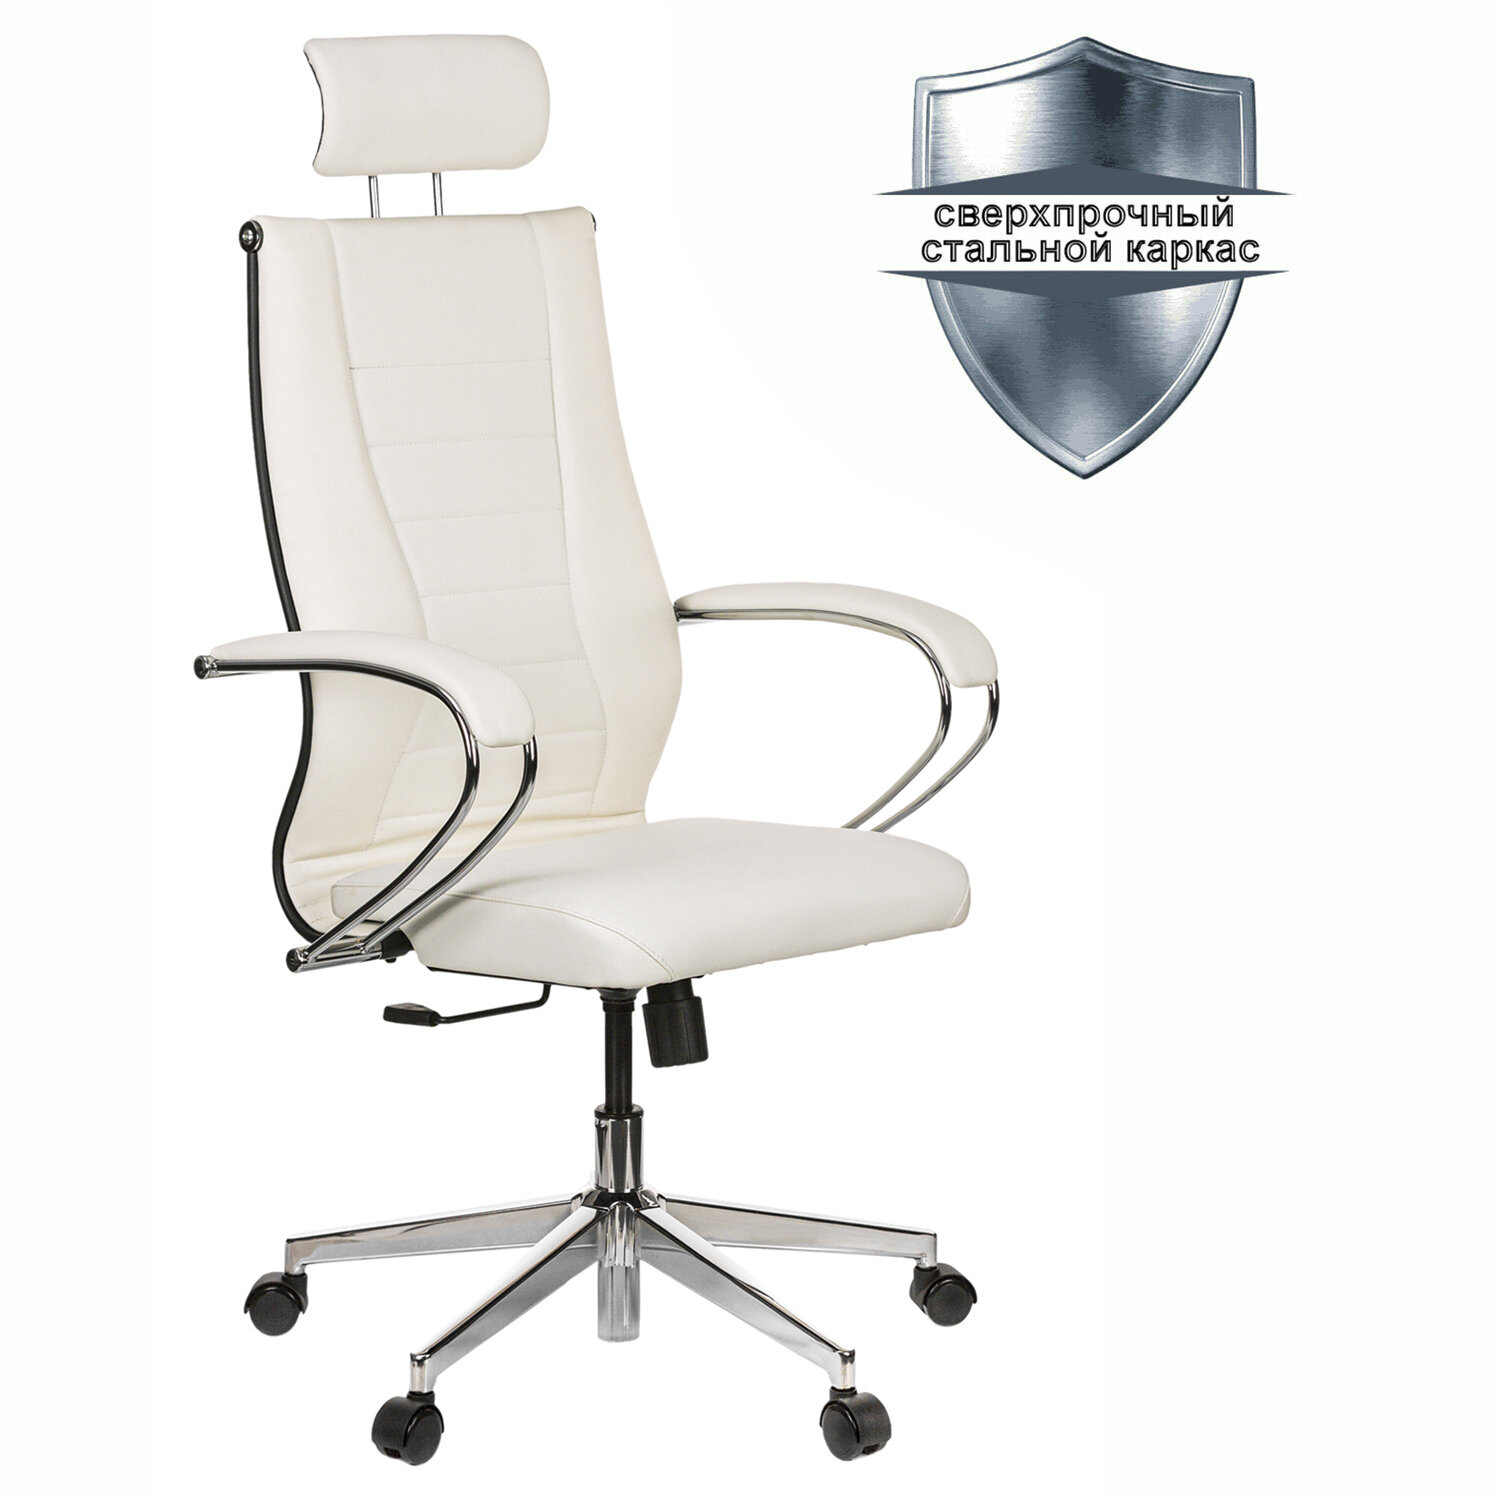 Кресло офисное МЕТТА К-34 хром, рецик. кожа, подголовник, сиденье и спинка мягкие, белое